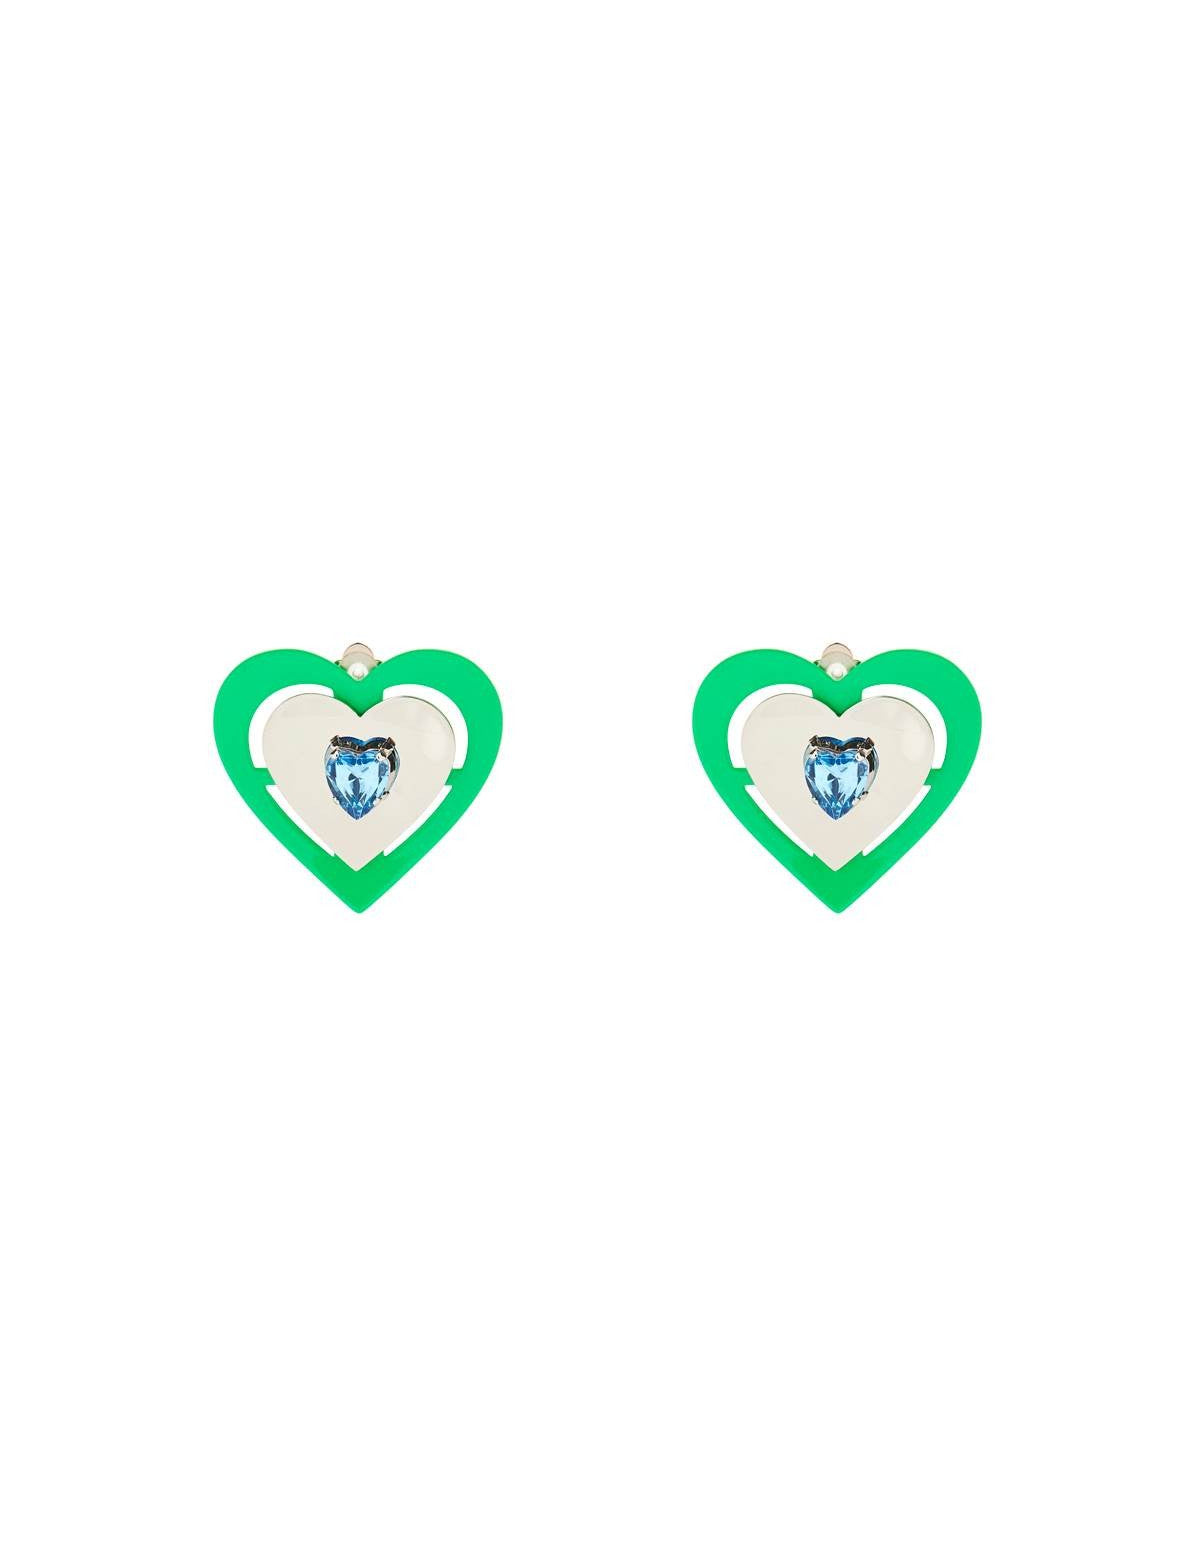 saf-safu-green-neon-heart-clip-on-earrings.jpg